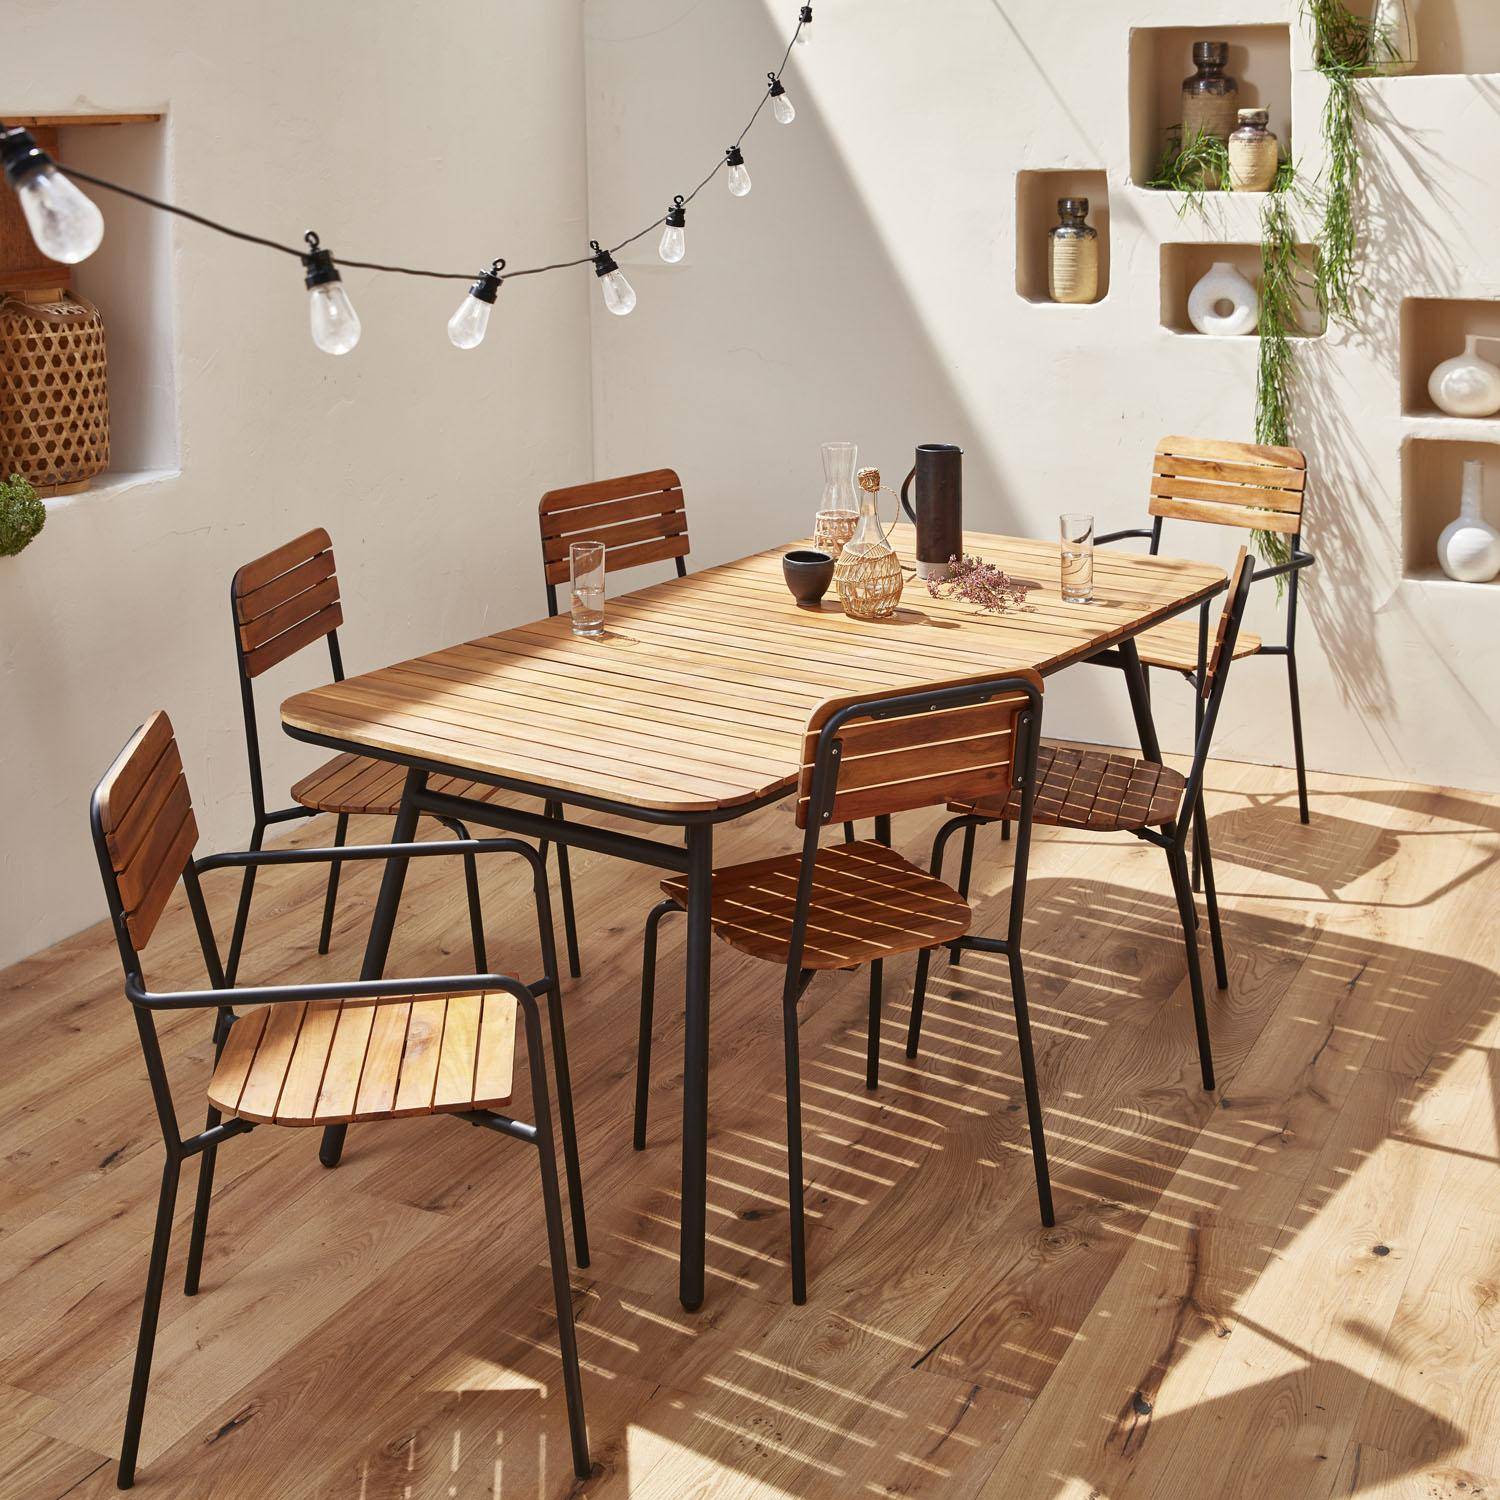 Gartenmöbel-Set aus Holz und Metall 180x90cm - Lima - Rechteckiger Tisch aus Akazie und Metall mit 4 Stühlen und 2 stapelbaren Sesseln Photo1